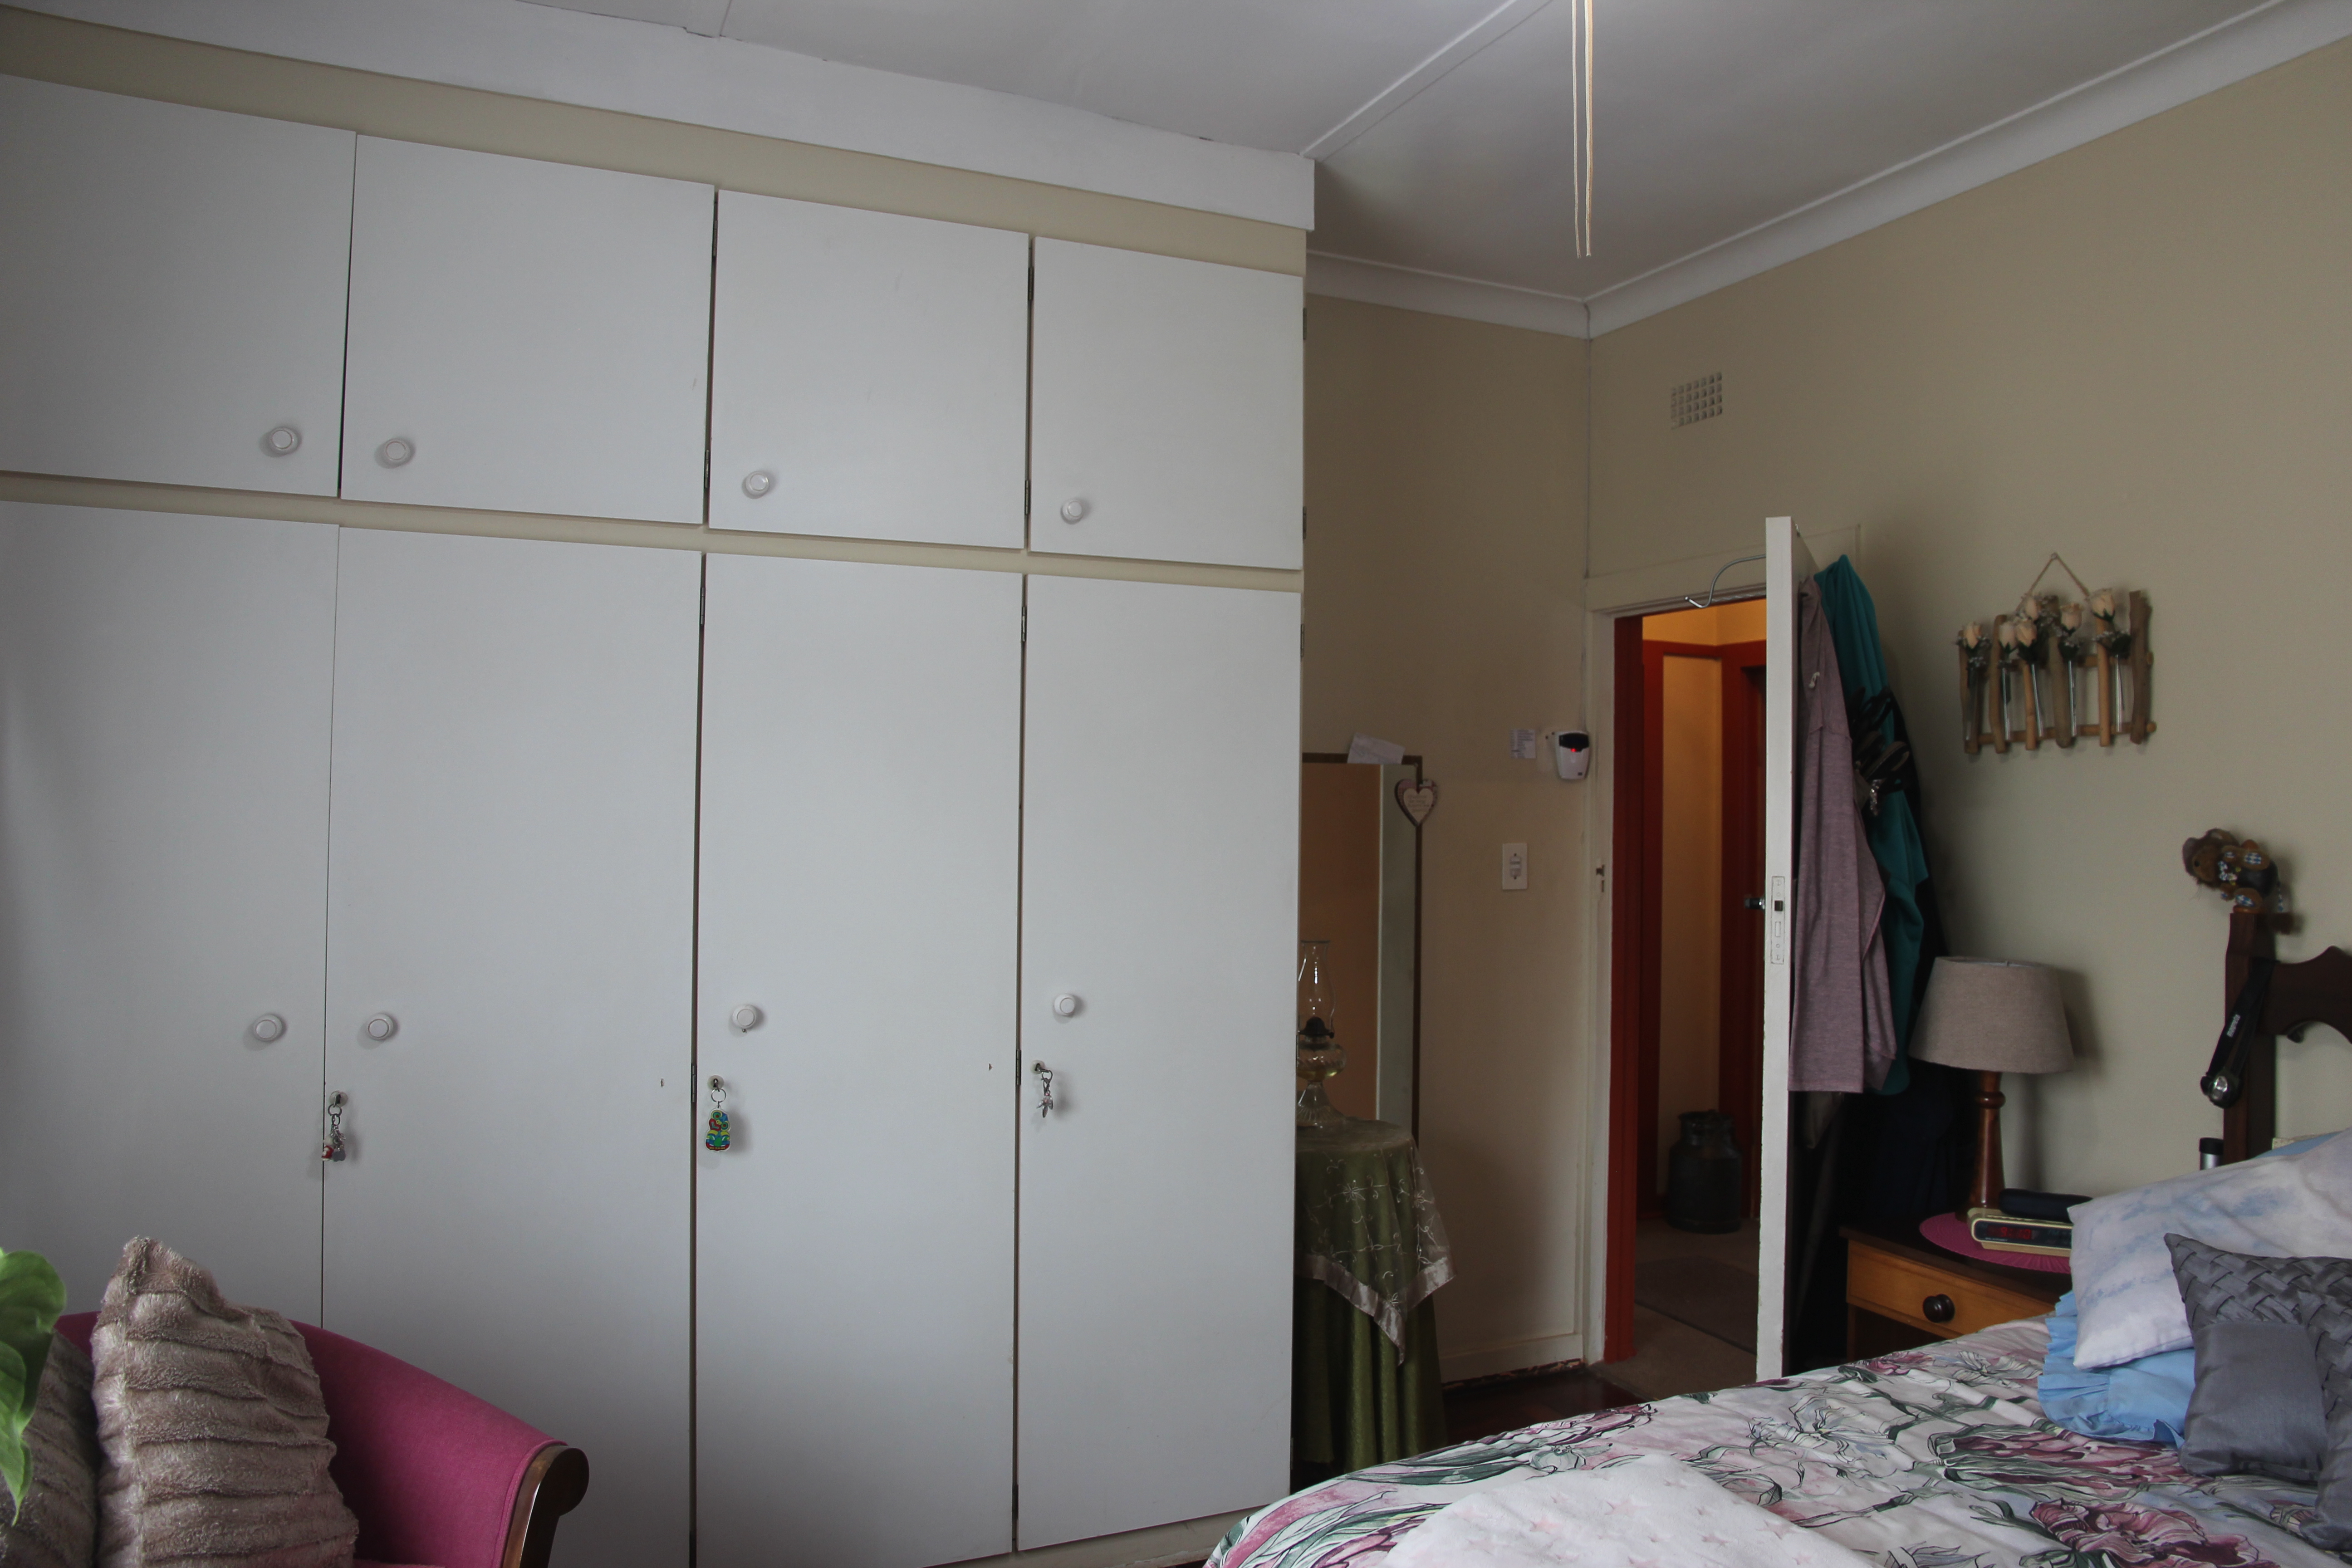 4 Bedroom Property for Sale in Primrose Gauteng